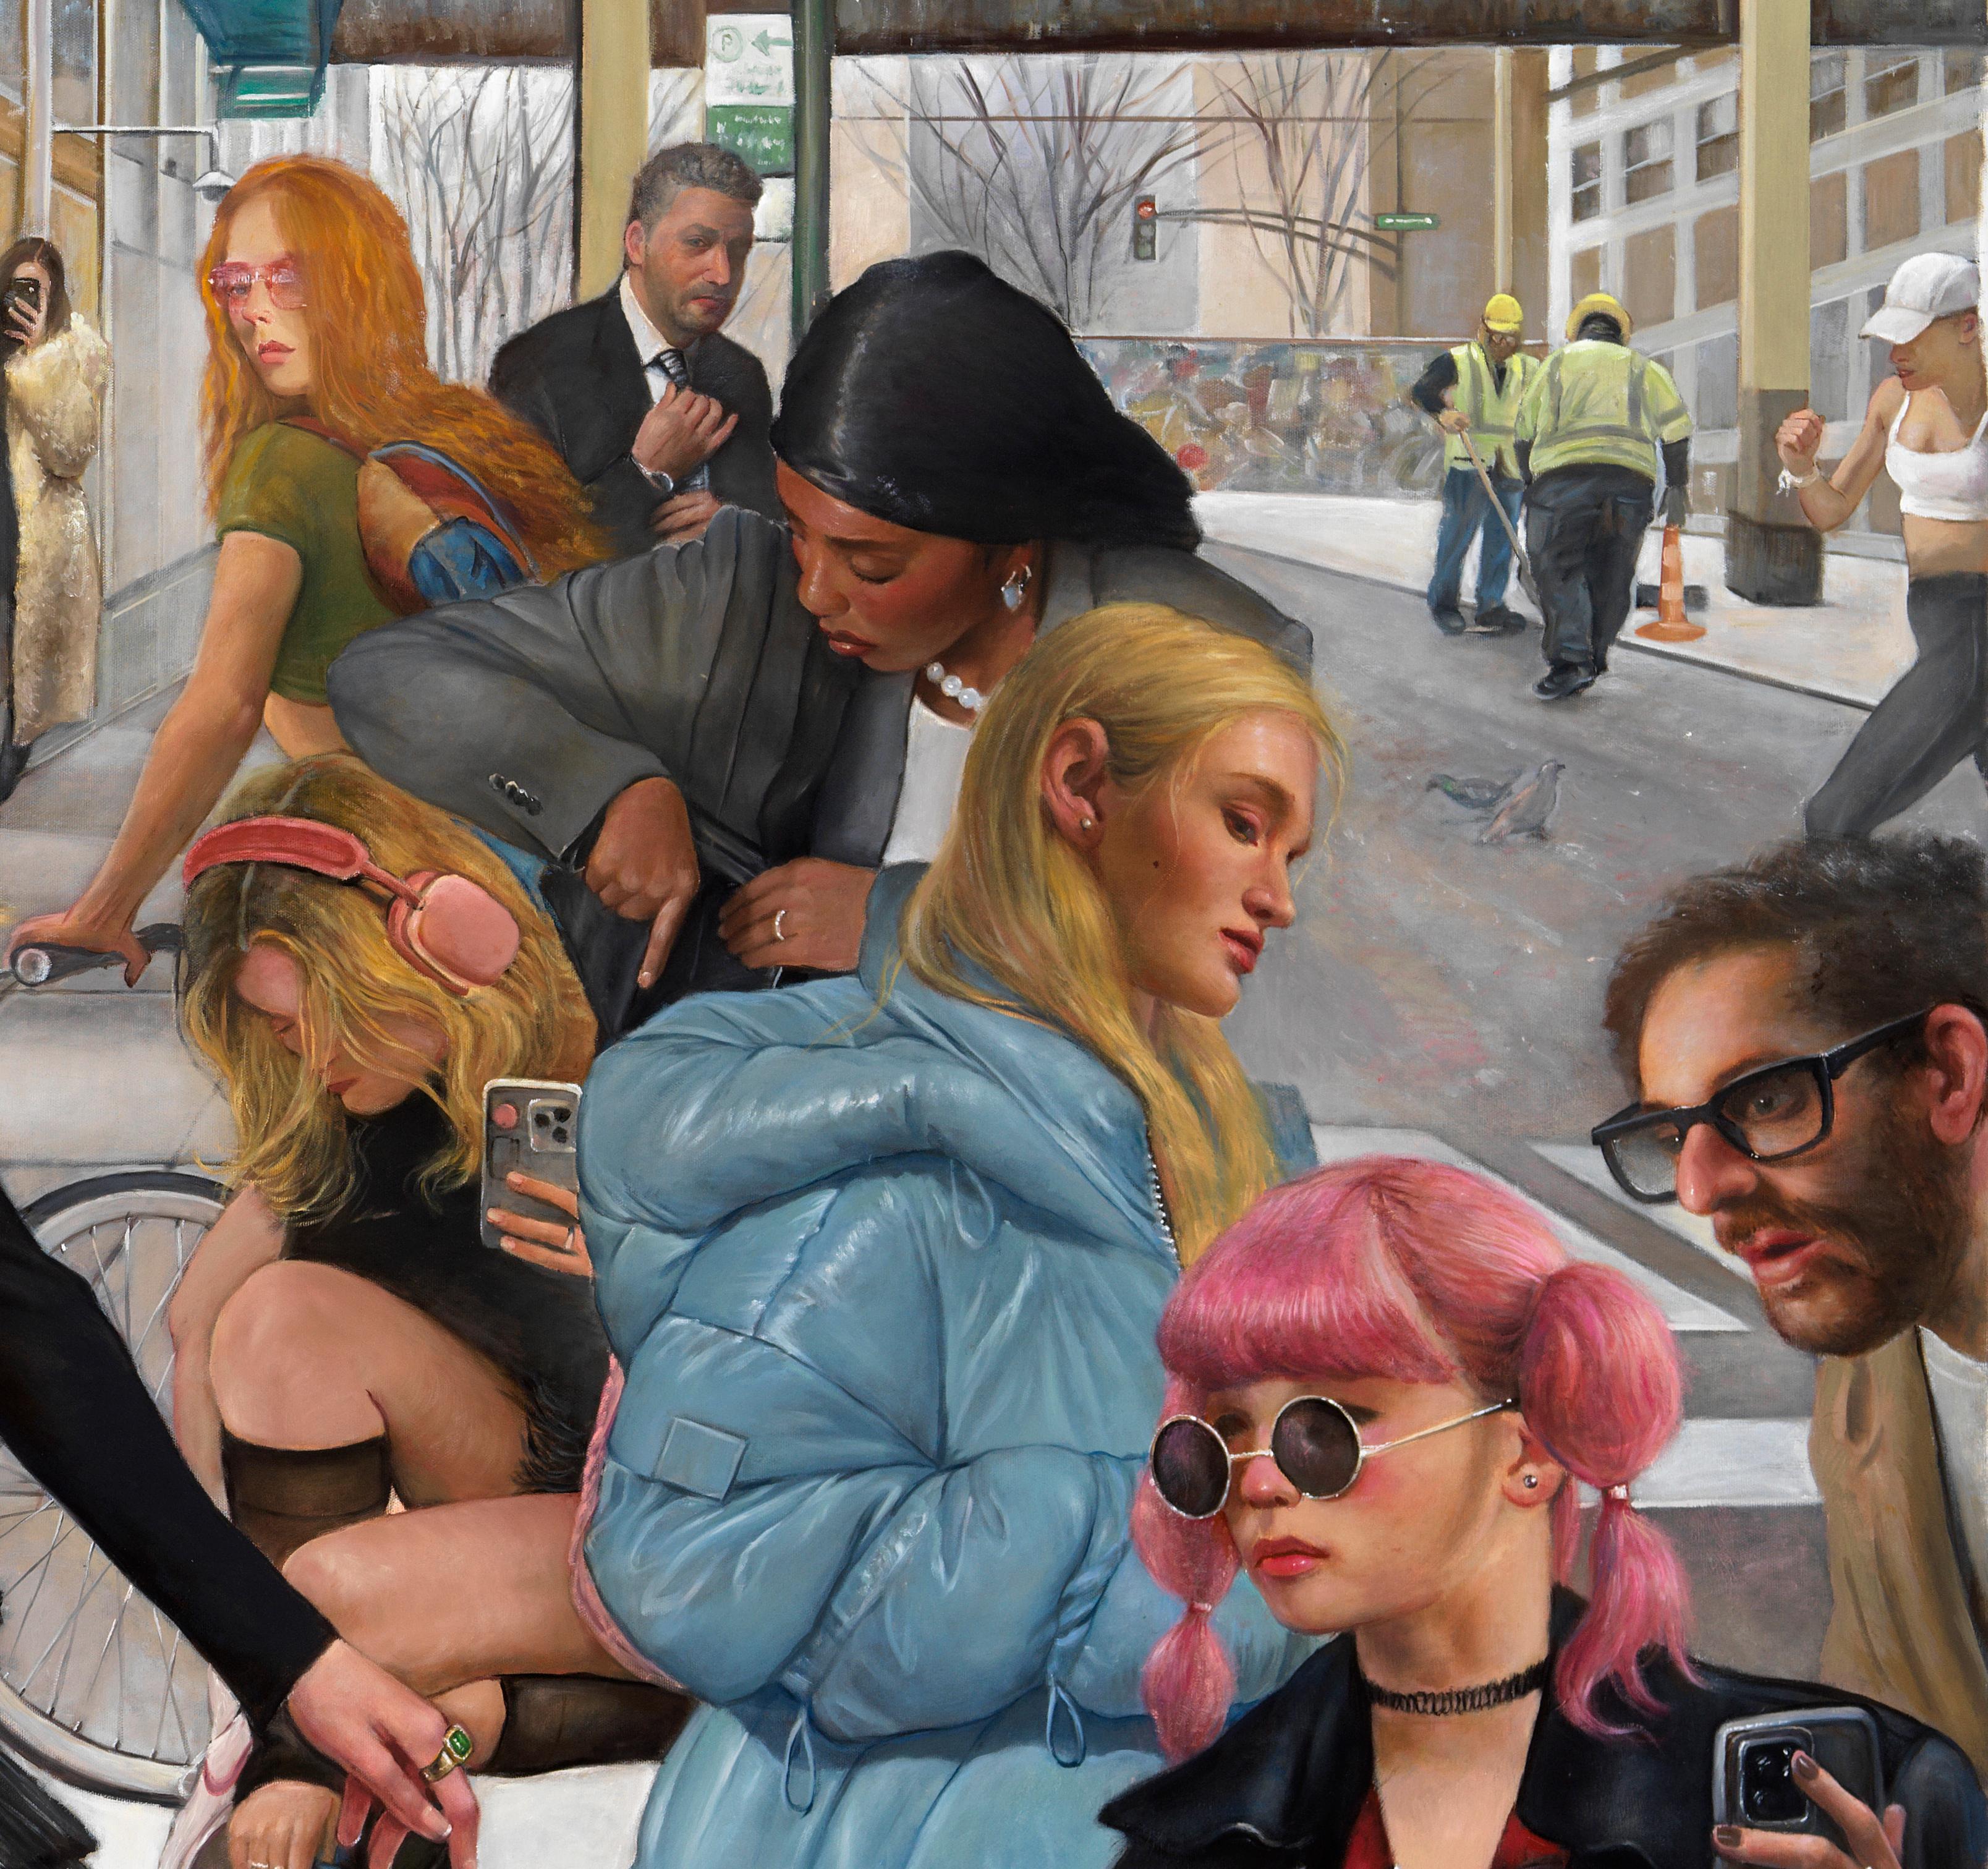 À l'ère des médias sociaux, nous rivalisons d'attention 24 heures sur 24 et 7 jours sur 7.  Bruno Surdo explore cette idée dans cette peinture à grande échelle intitulée 